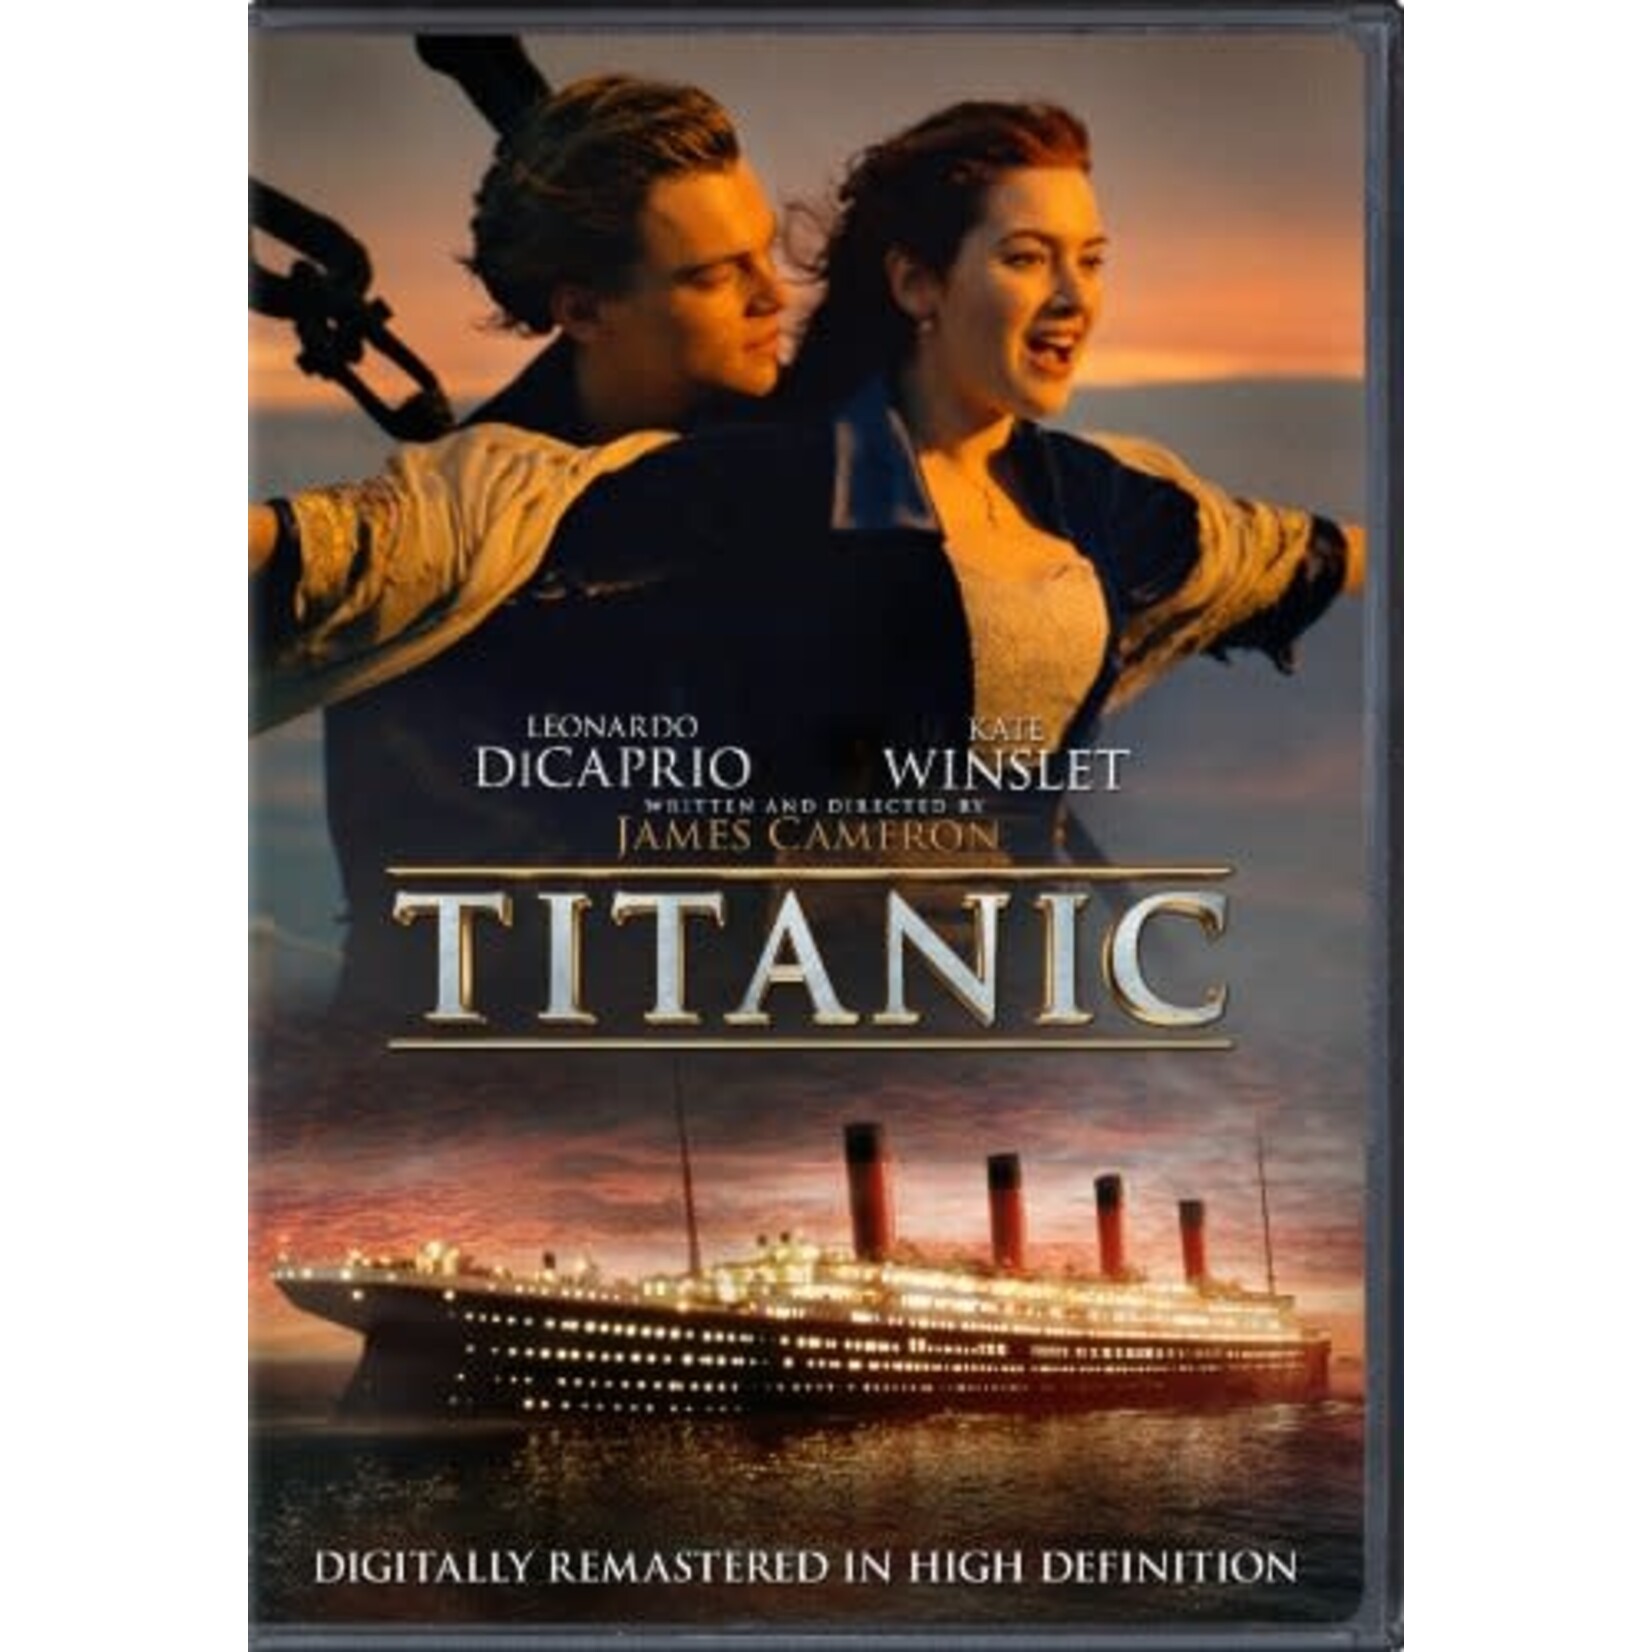 Titanic (1997) [DVD]